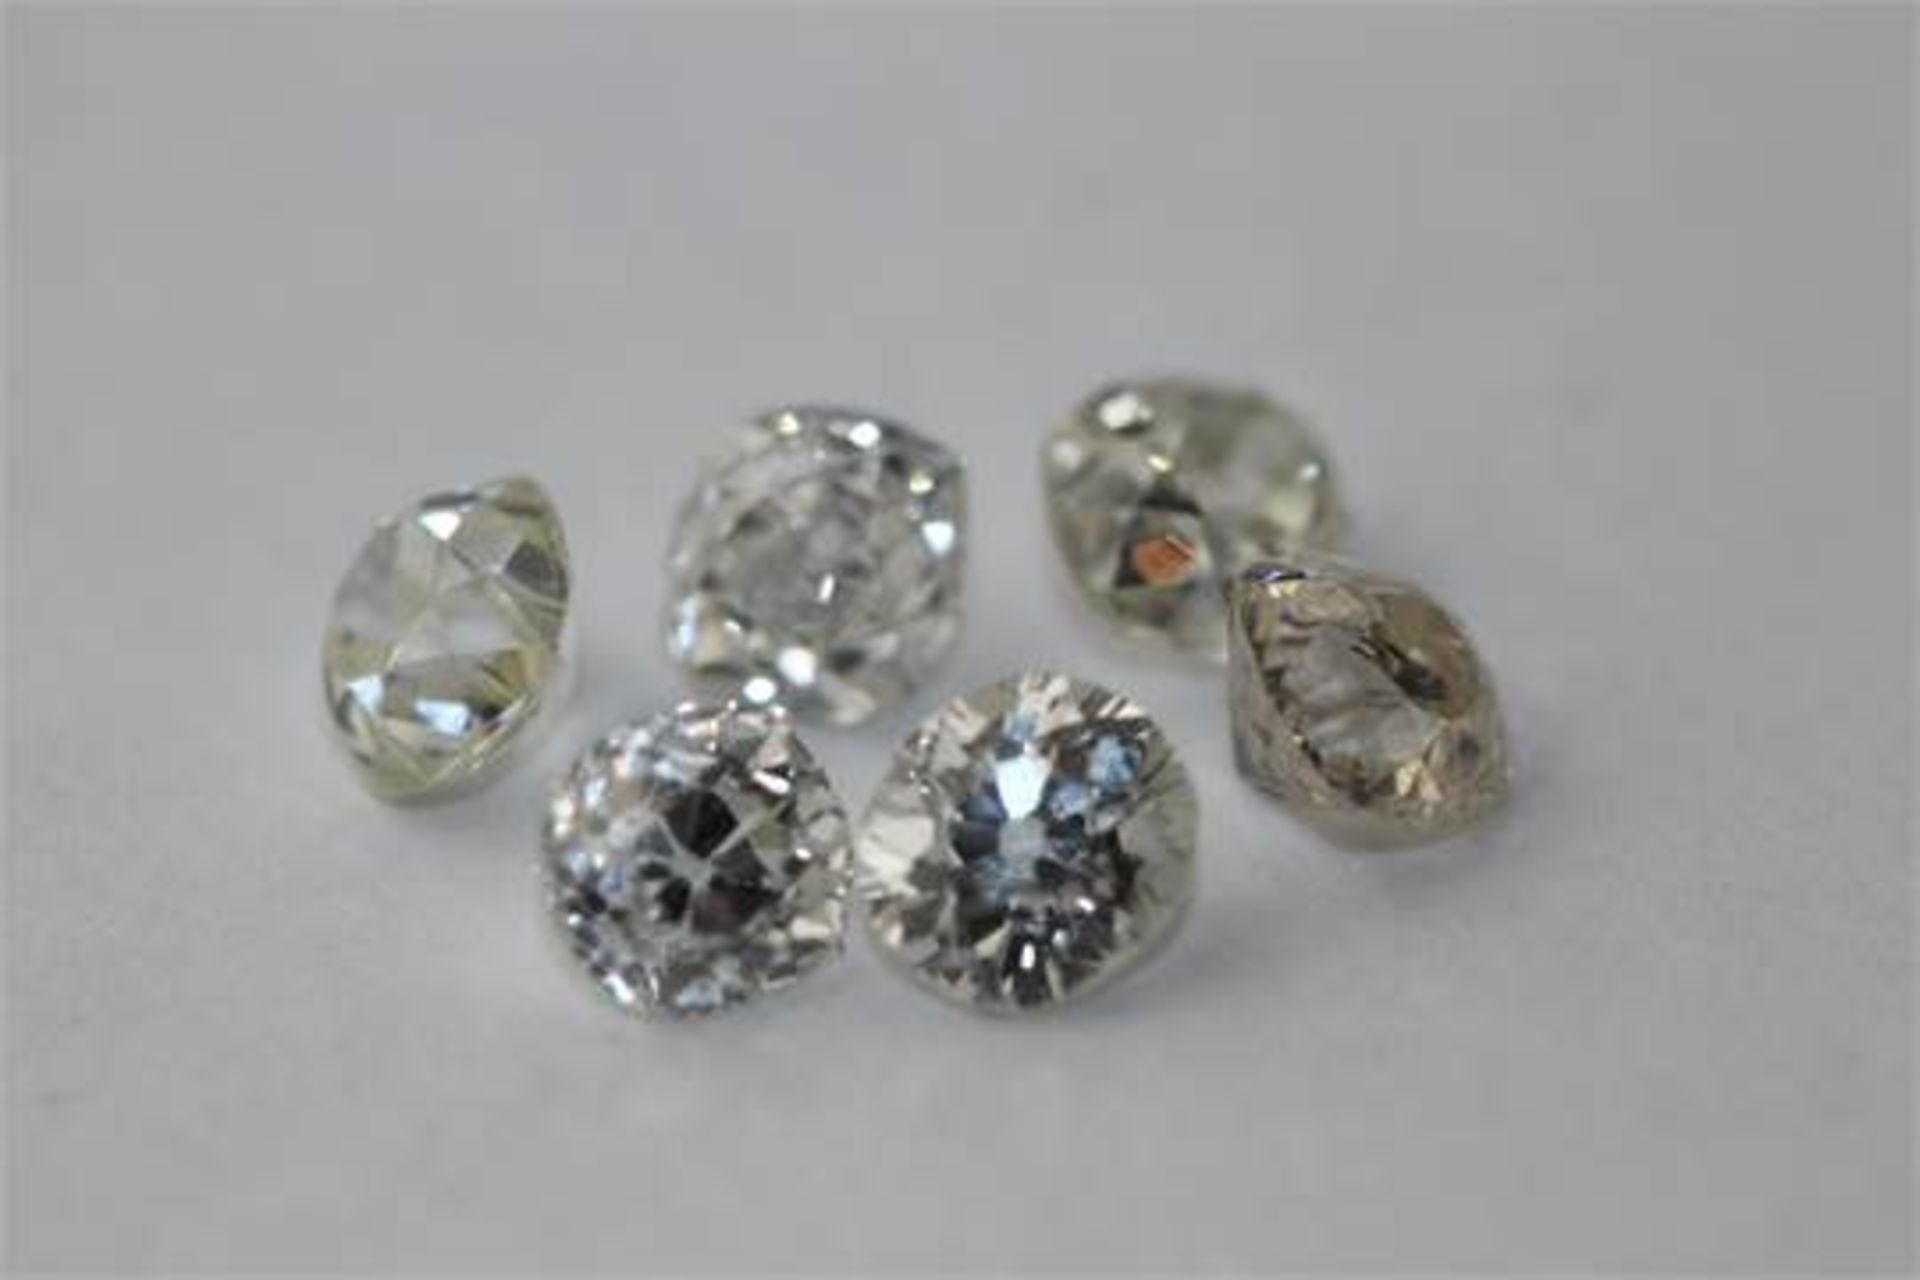 6 x Old cut Diamonds = 2.78ct,  Colour range D - J,  clarity VS